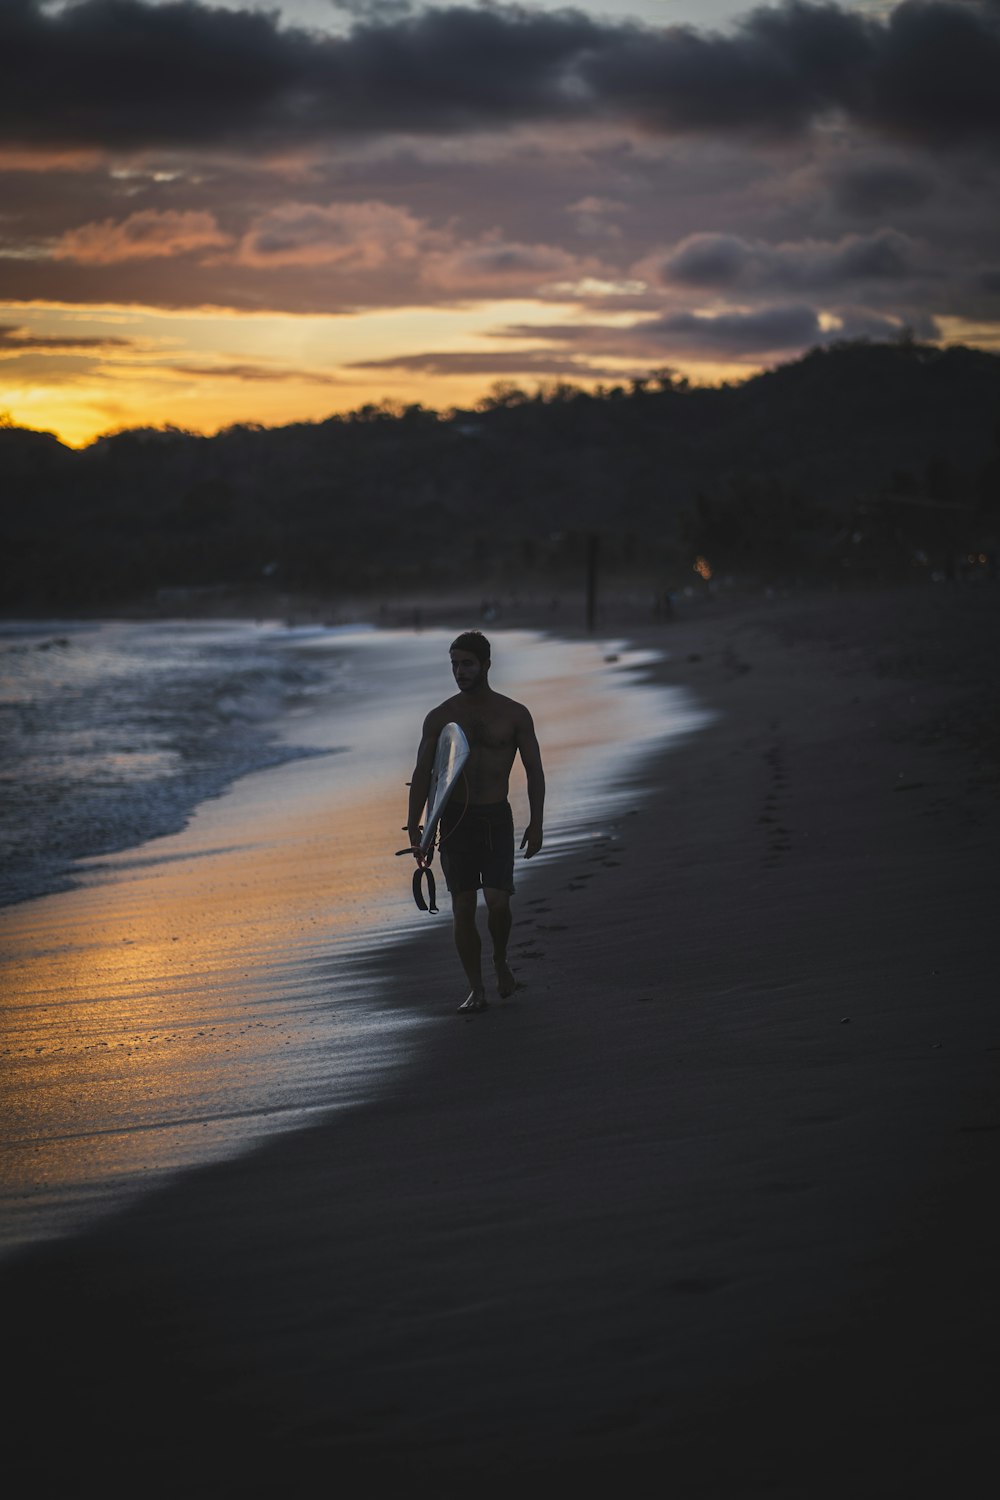 a man walking along a beach holding a surfboard